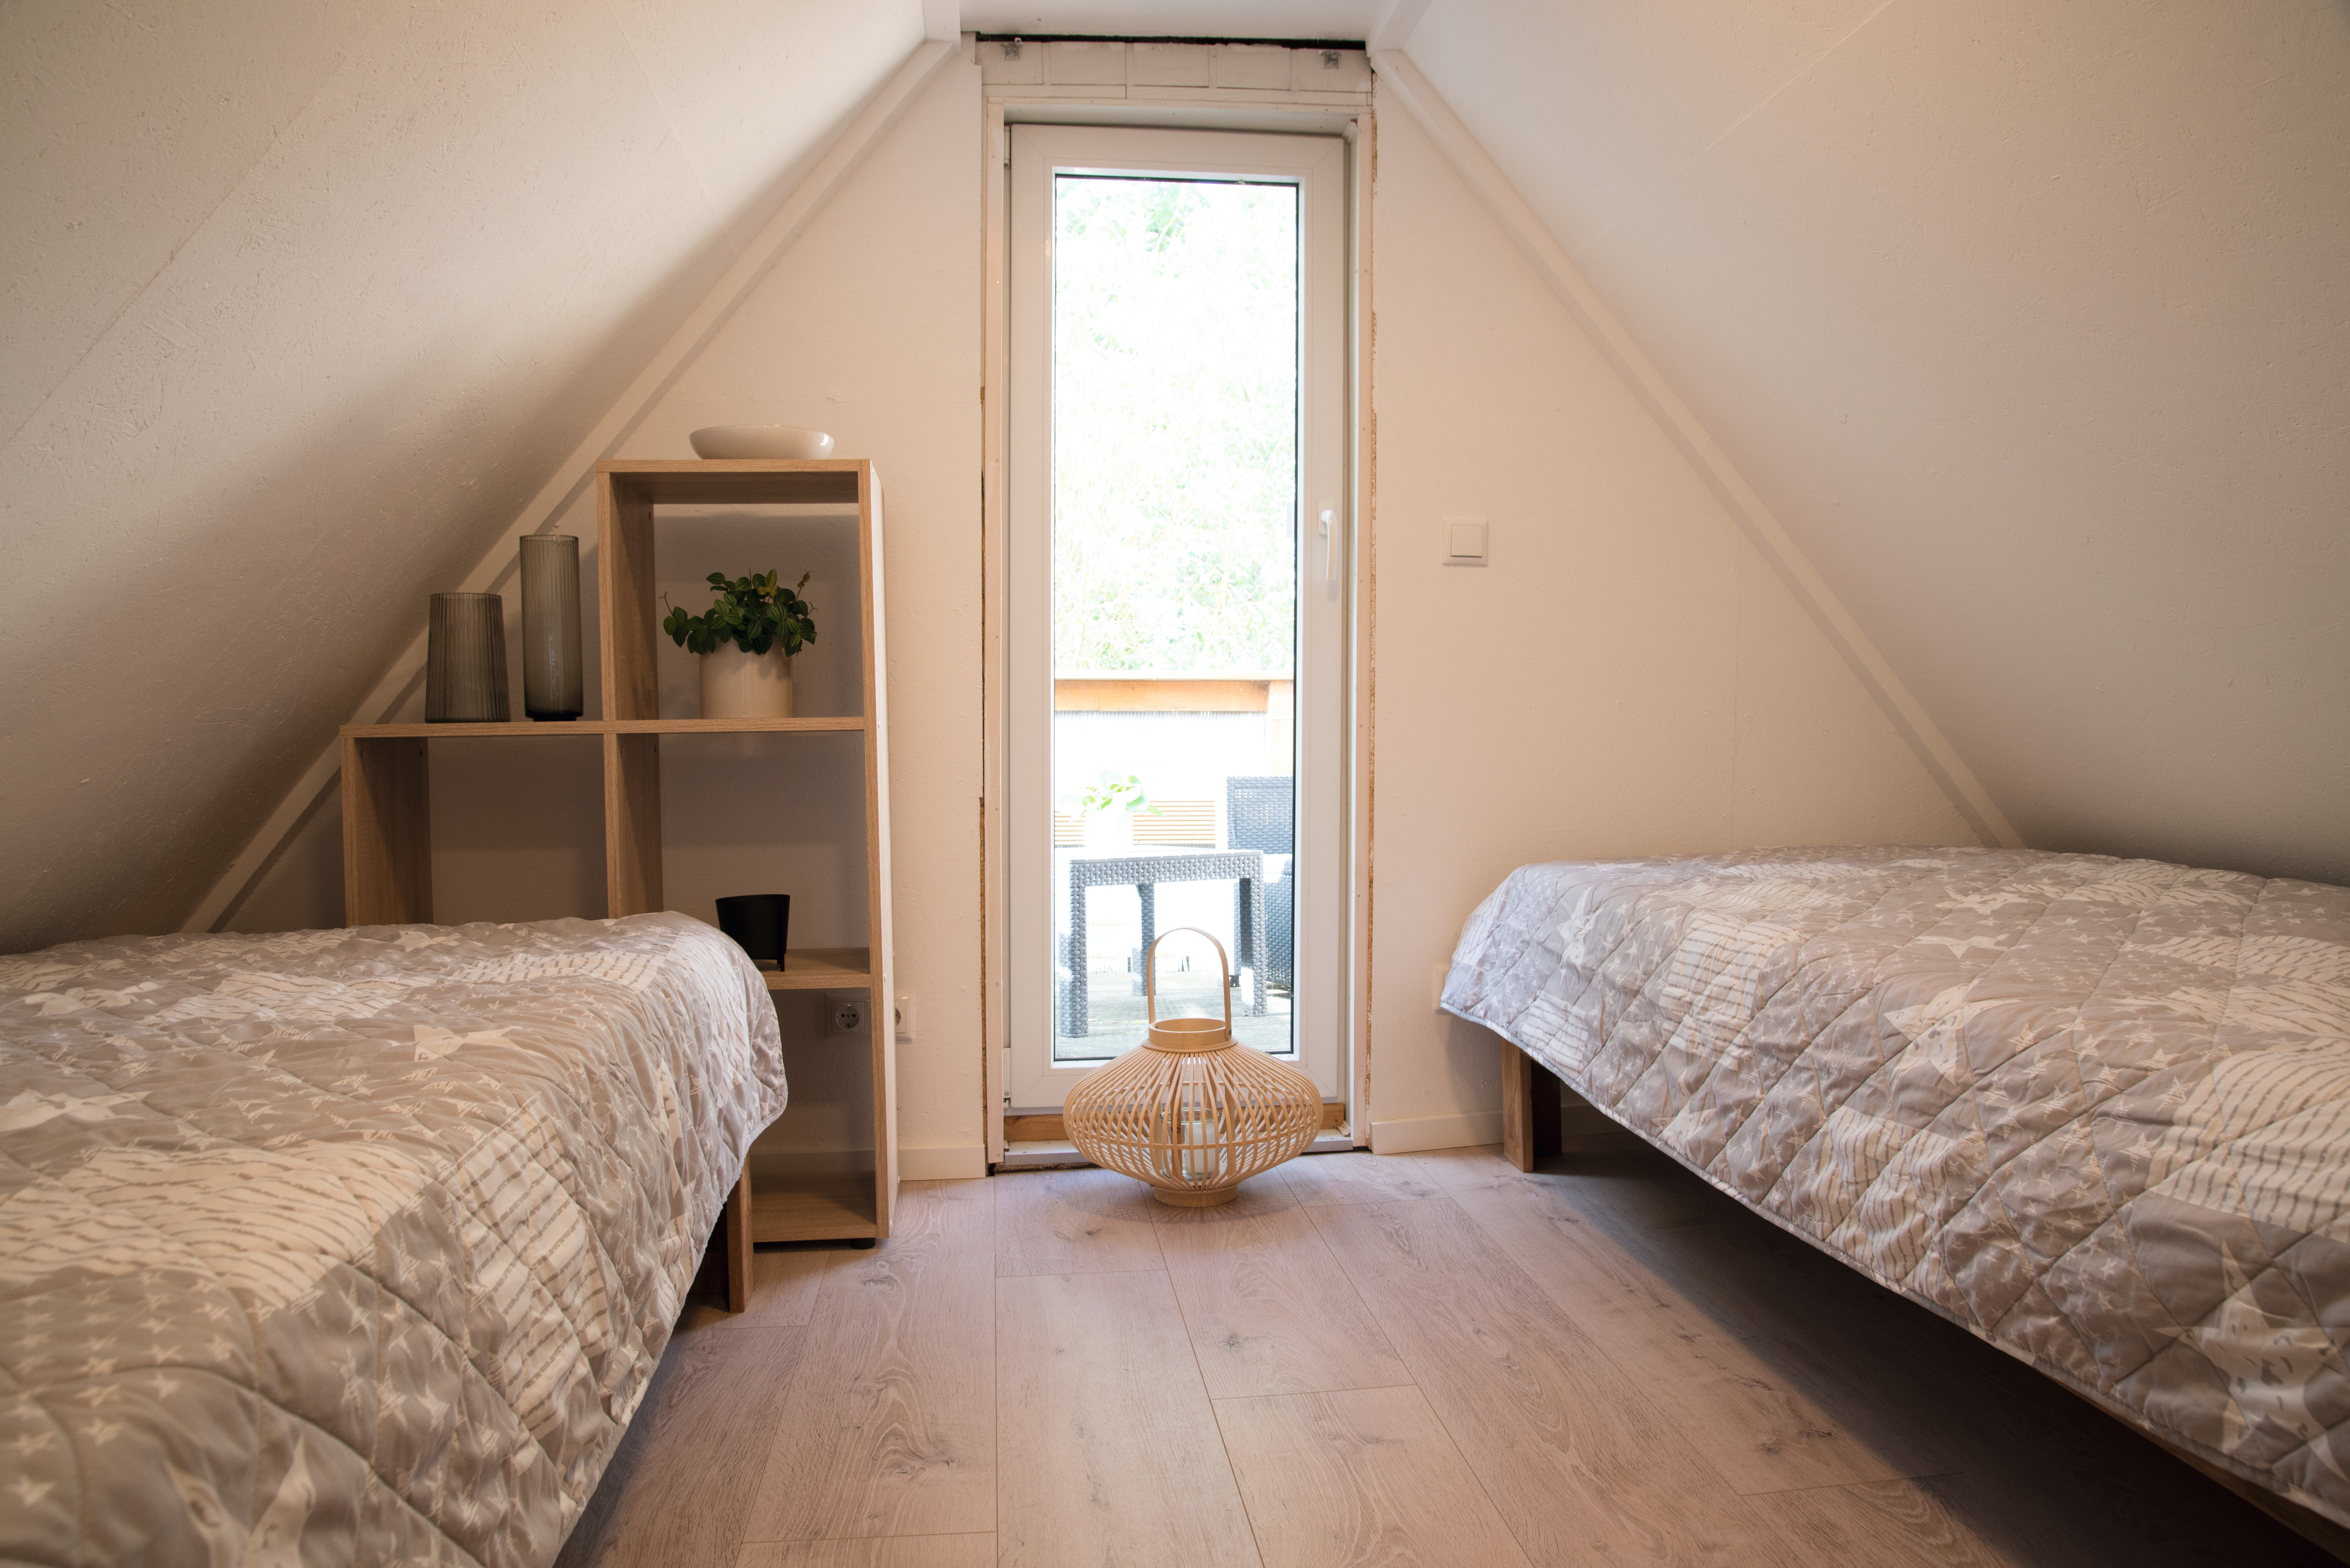 La camera da letto ben attrezzata nel sottotetto appare più spaziosa di quanto sia in realtà grazie al decoro chiaro EPC026.